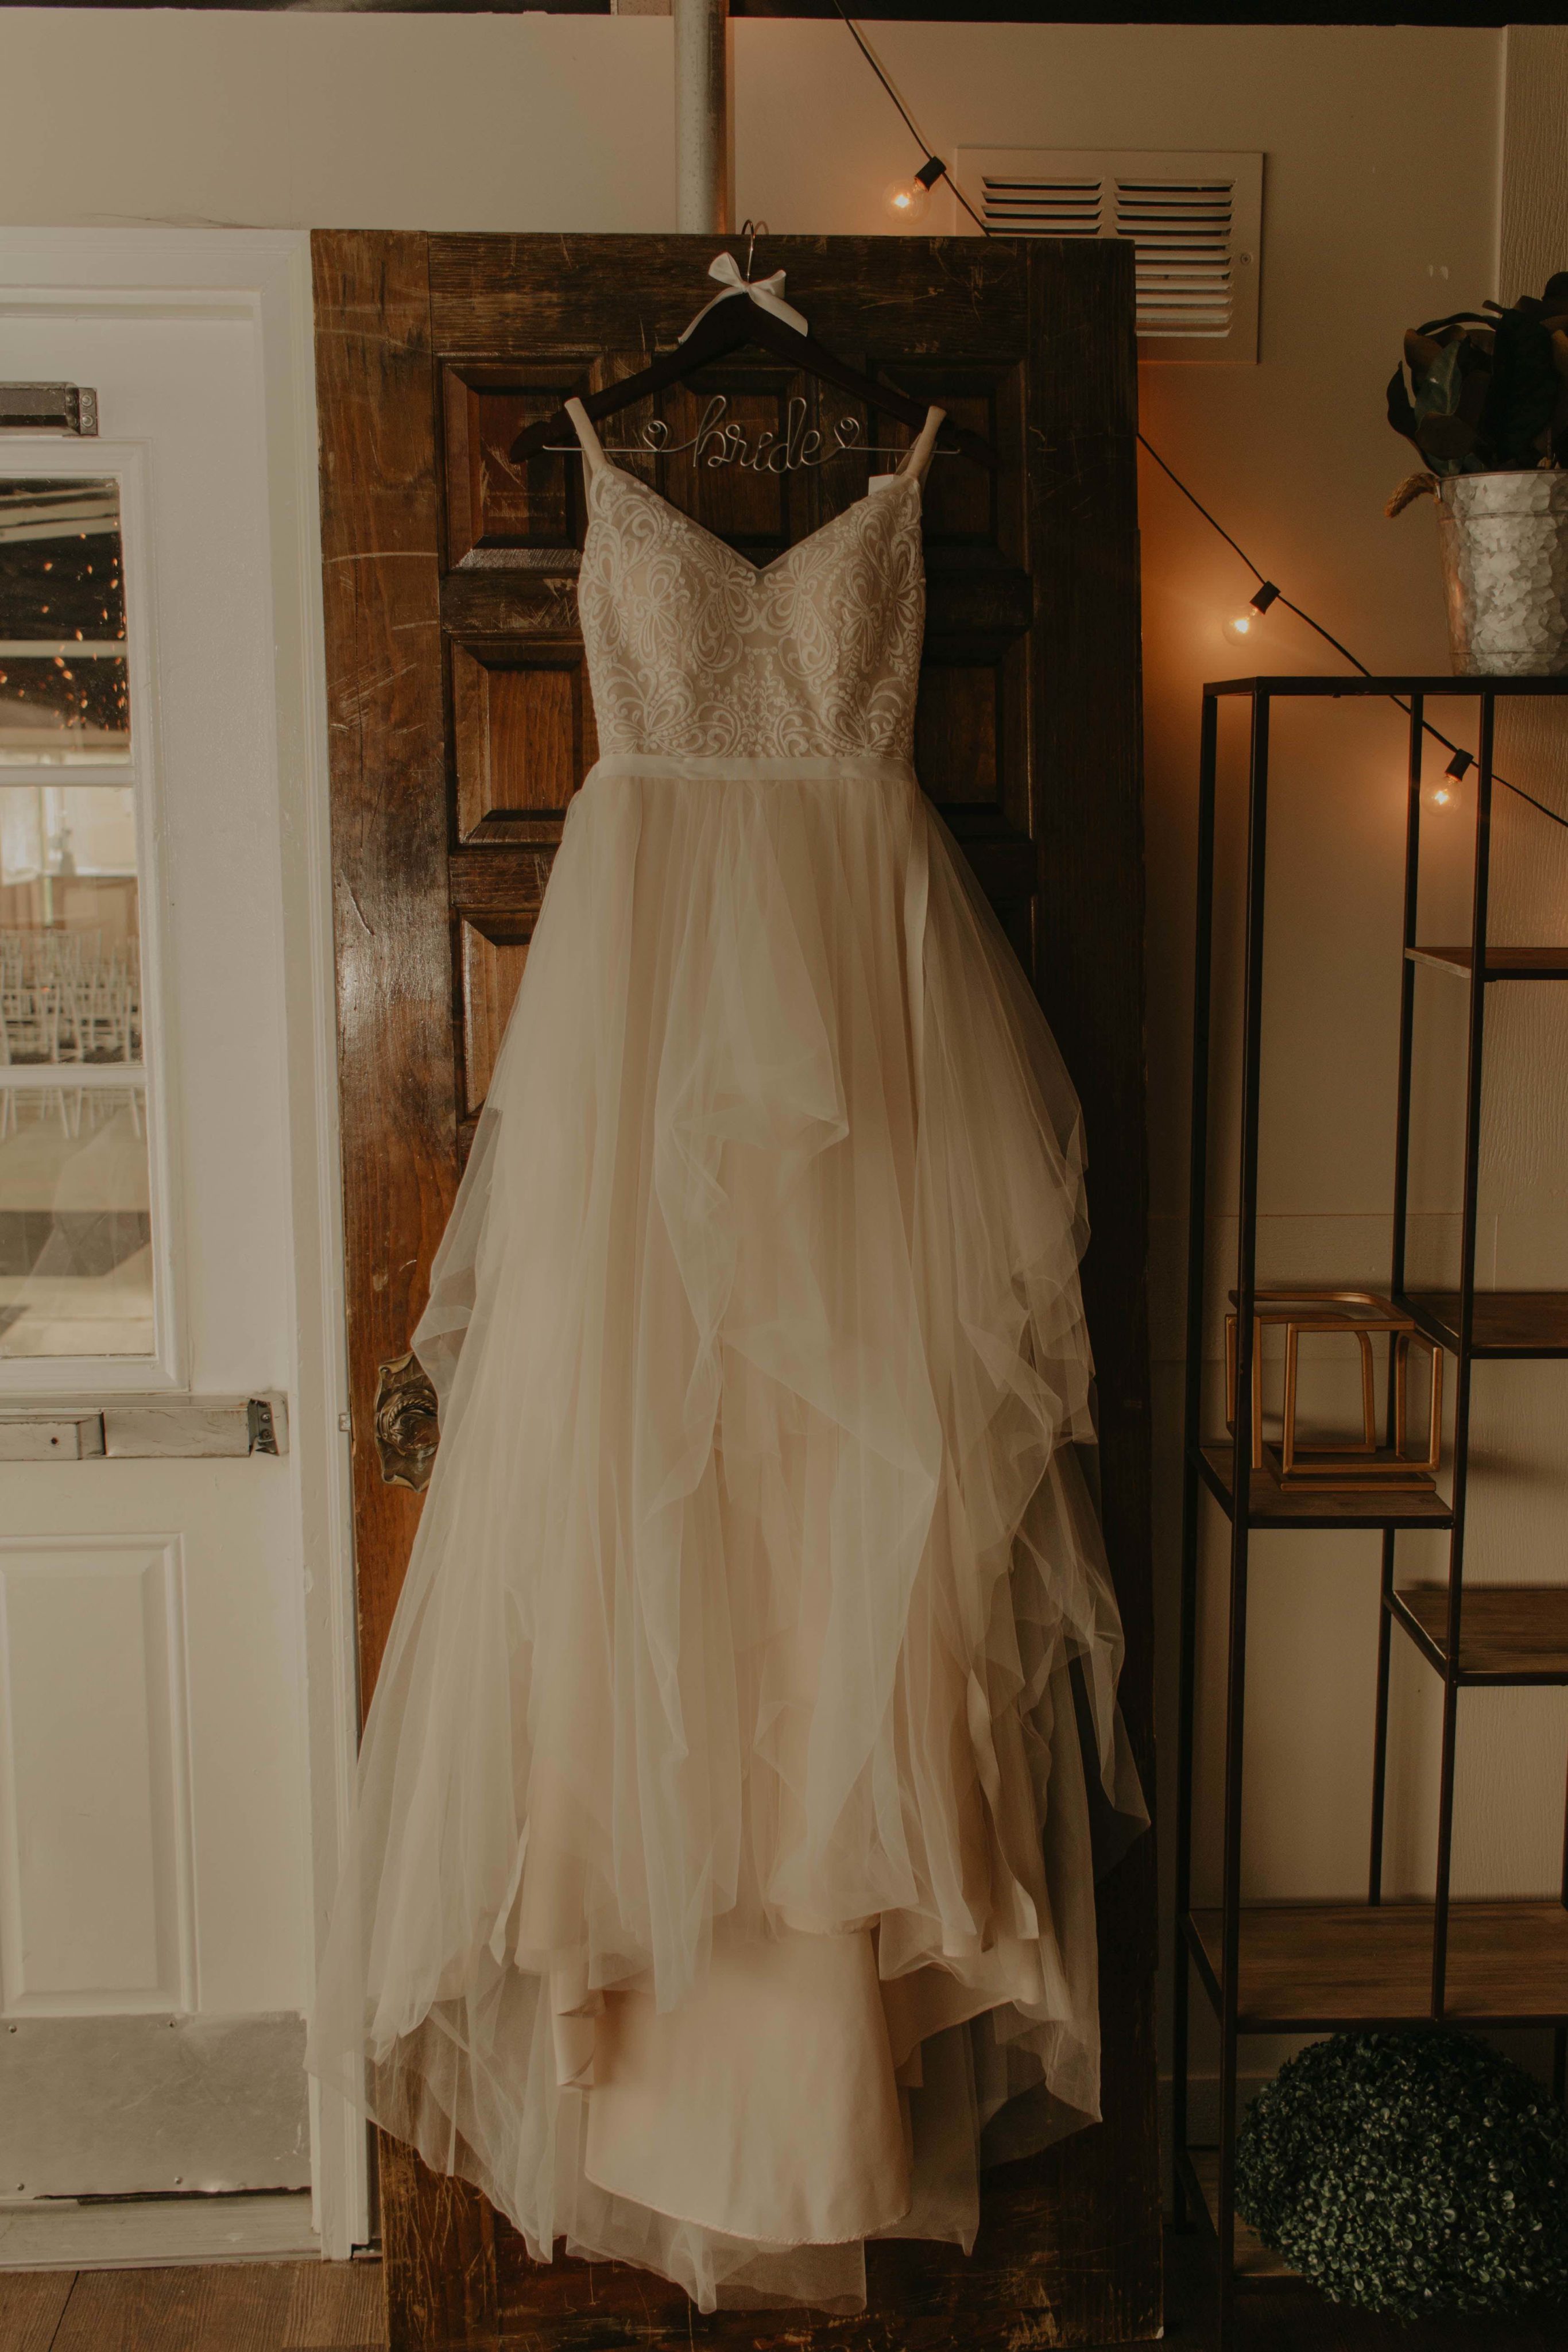 Hanging shot of wedding dress